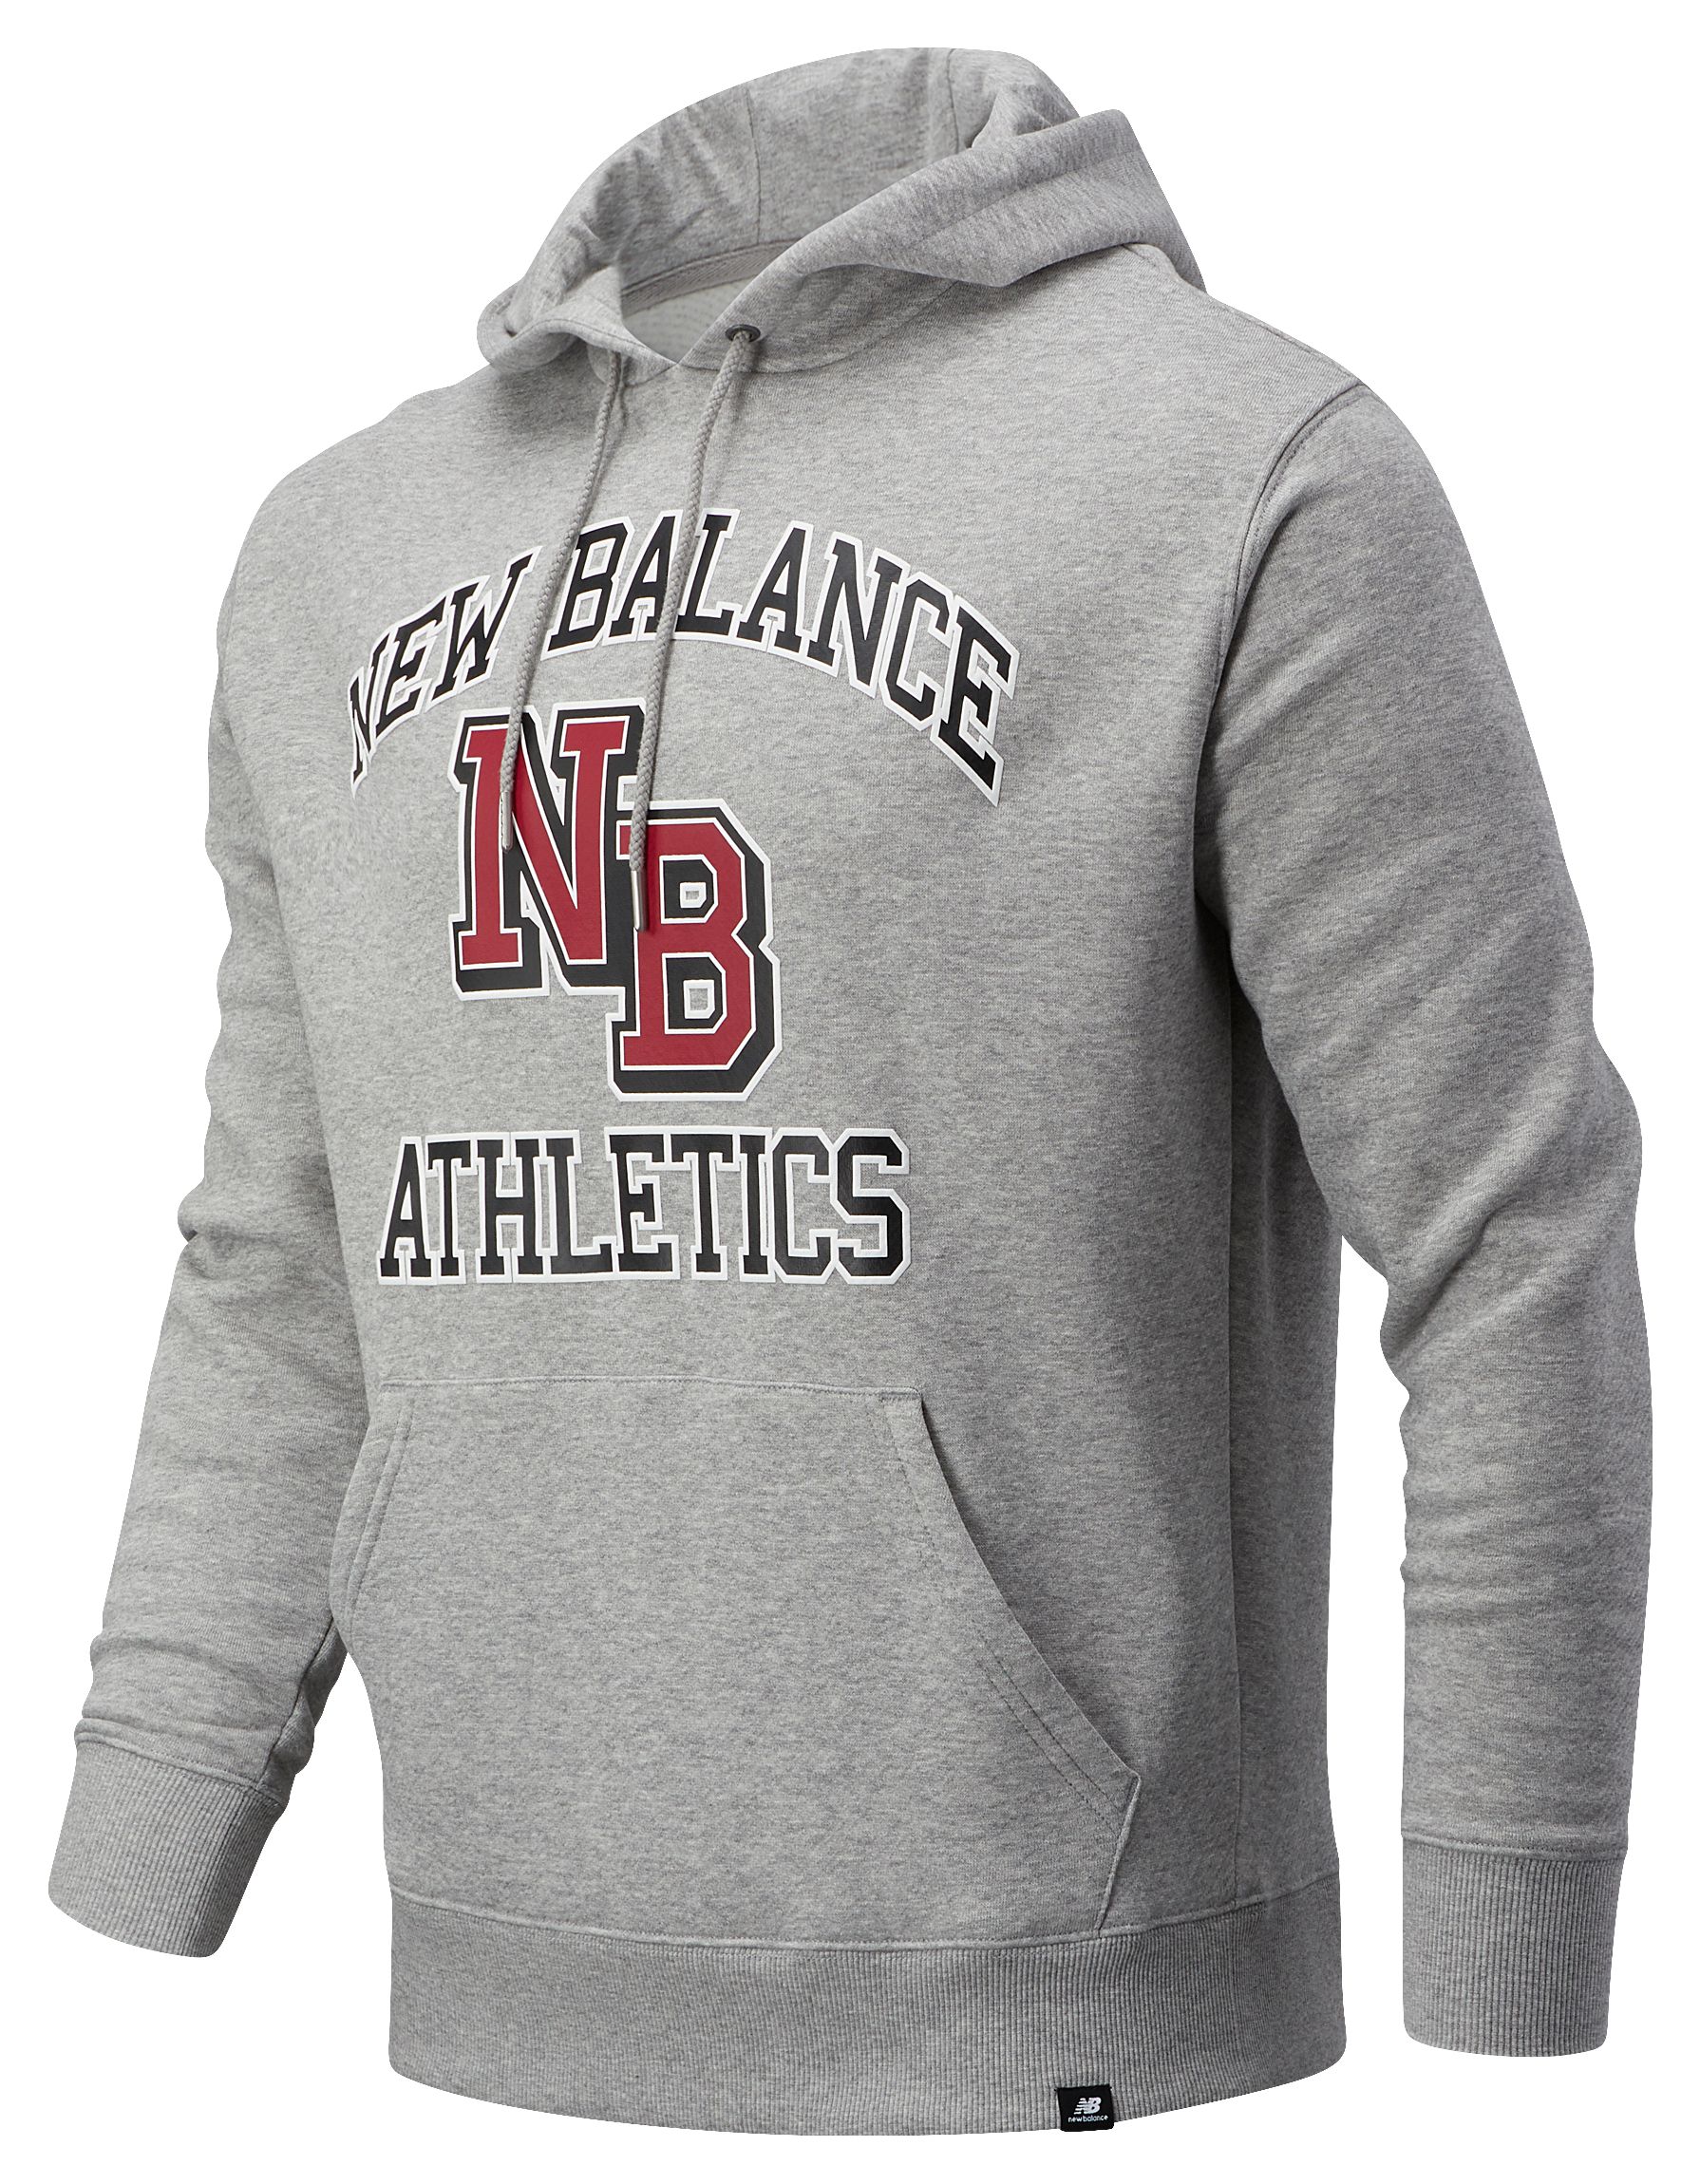 nb athletics hoodie